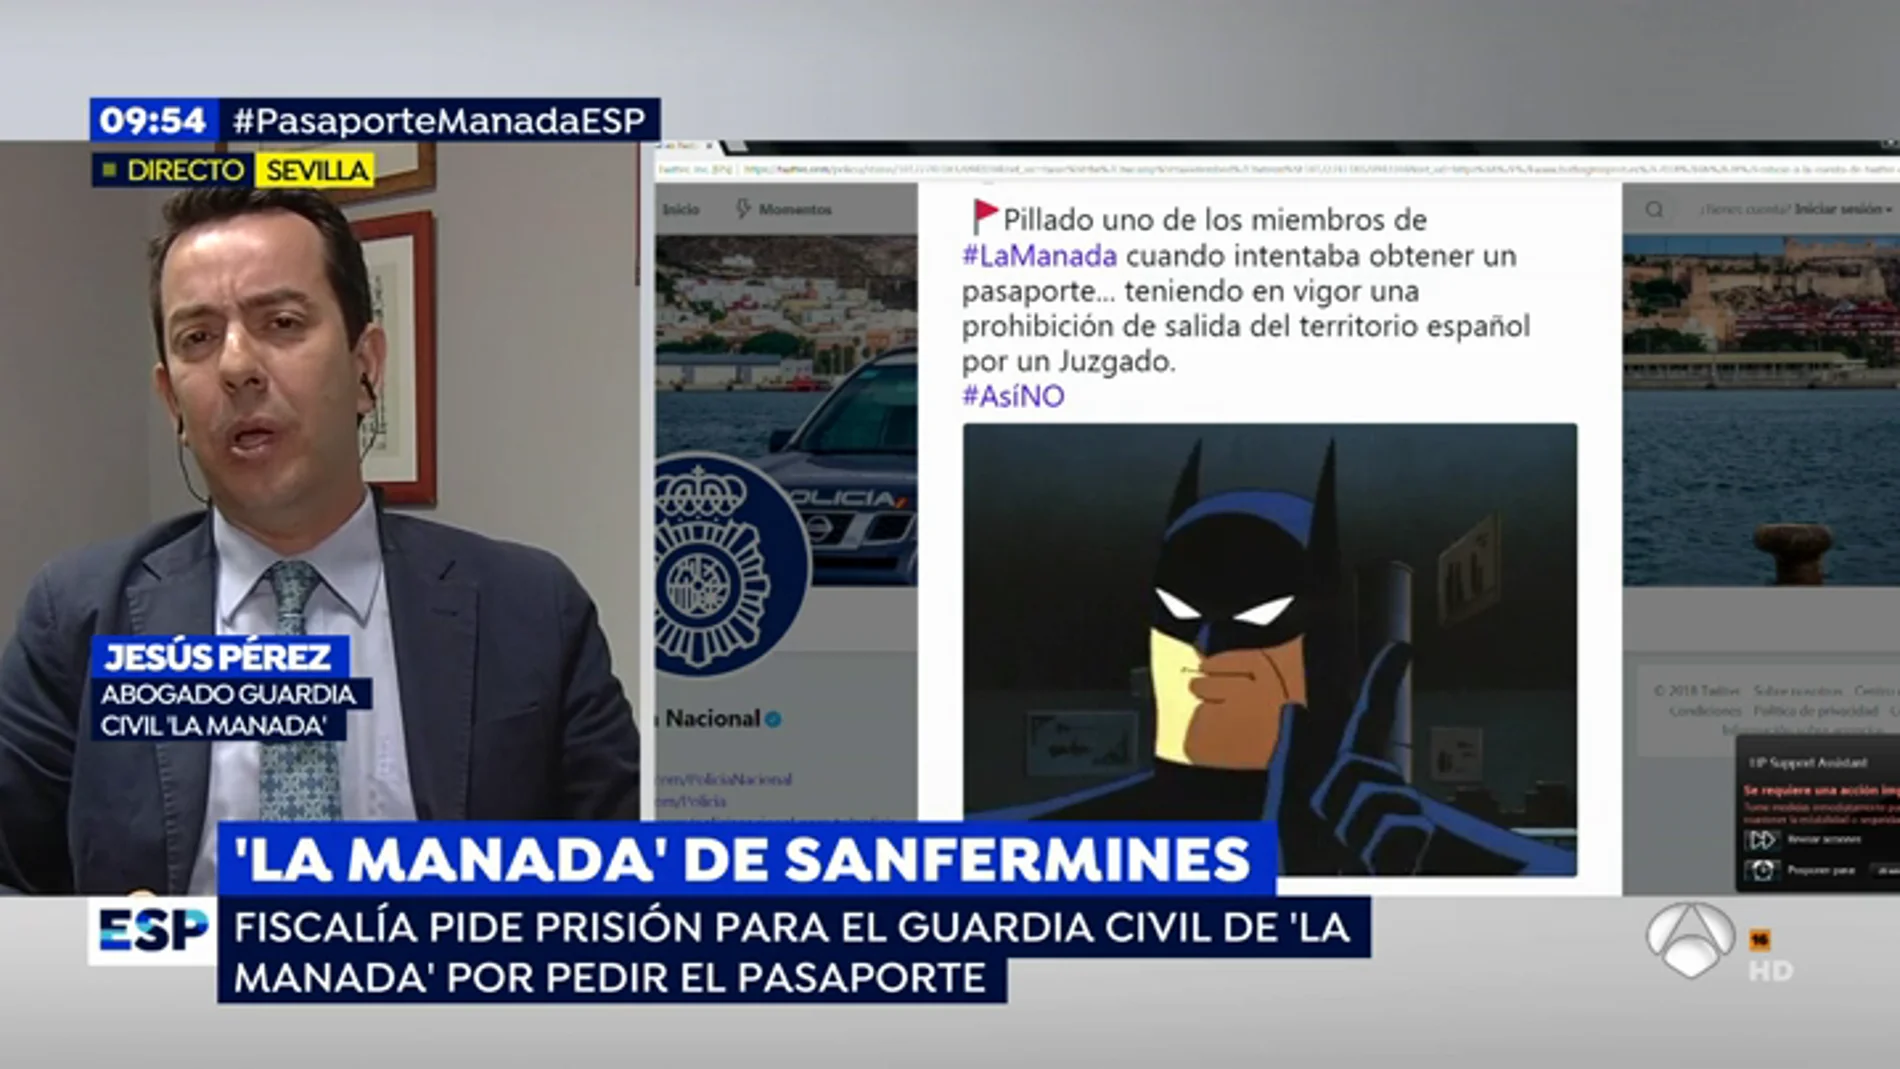   El abogado del guardia civil de 'La Manada': "El 'tuit' de la Policía fue malintencionado, ha habido un malentendido"